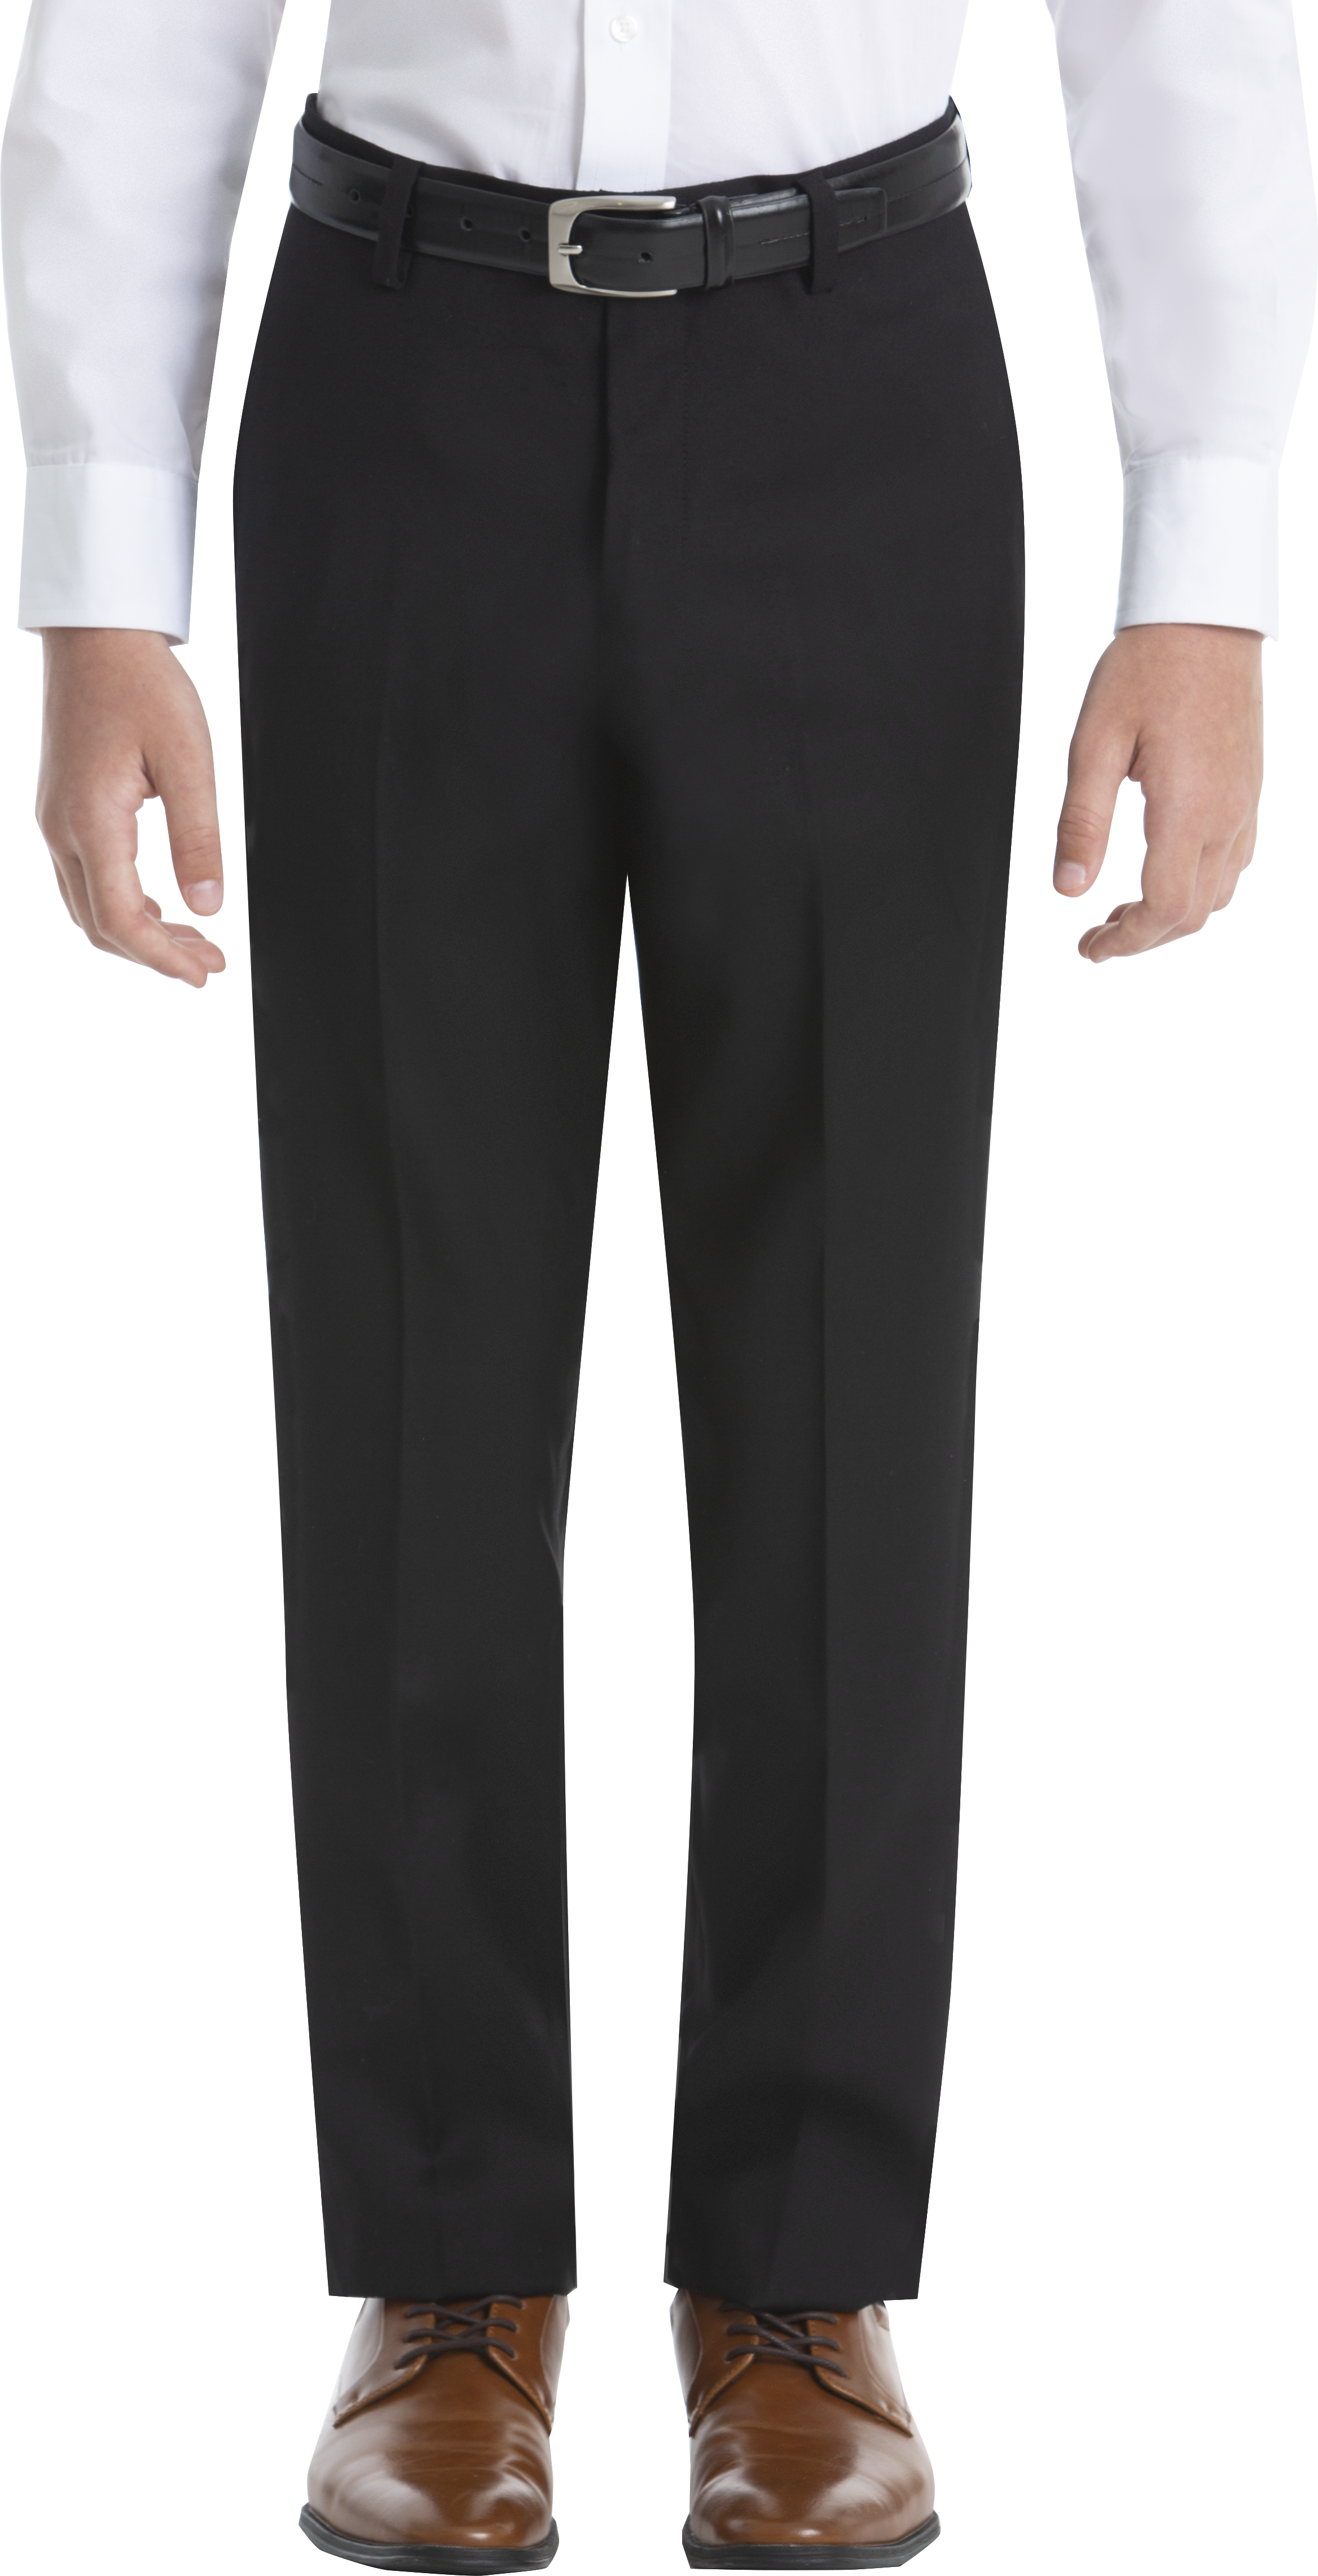 Boys (Sizes -) Suit Separates Tuxedo Pants